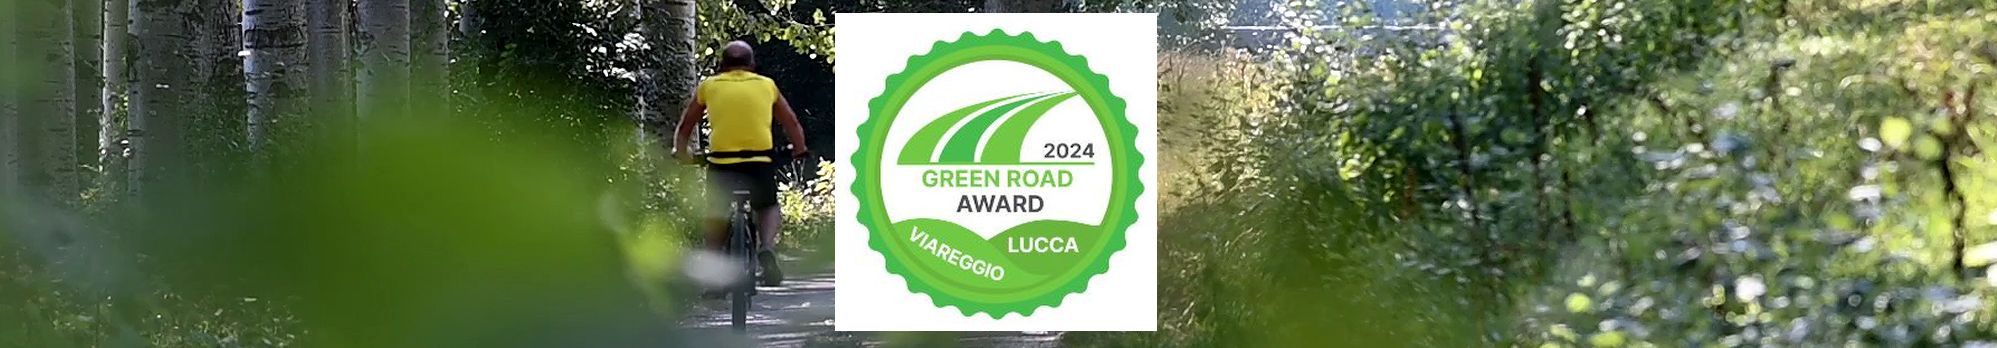 green road award